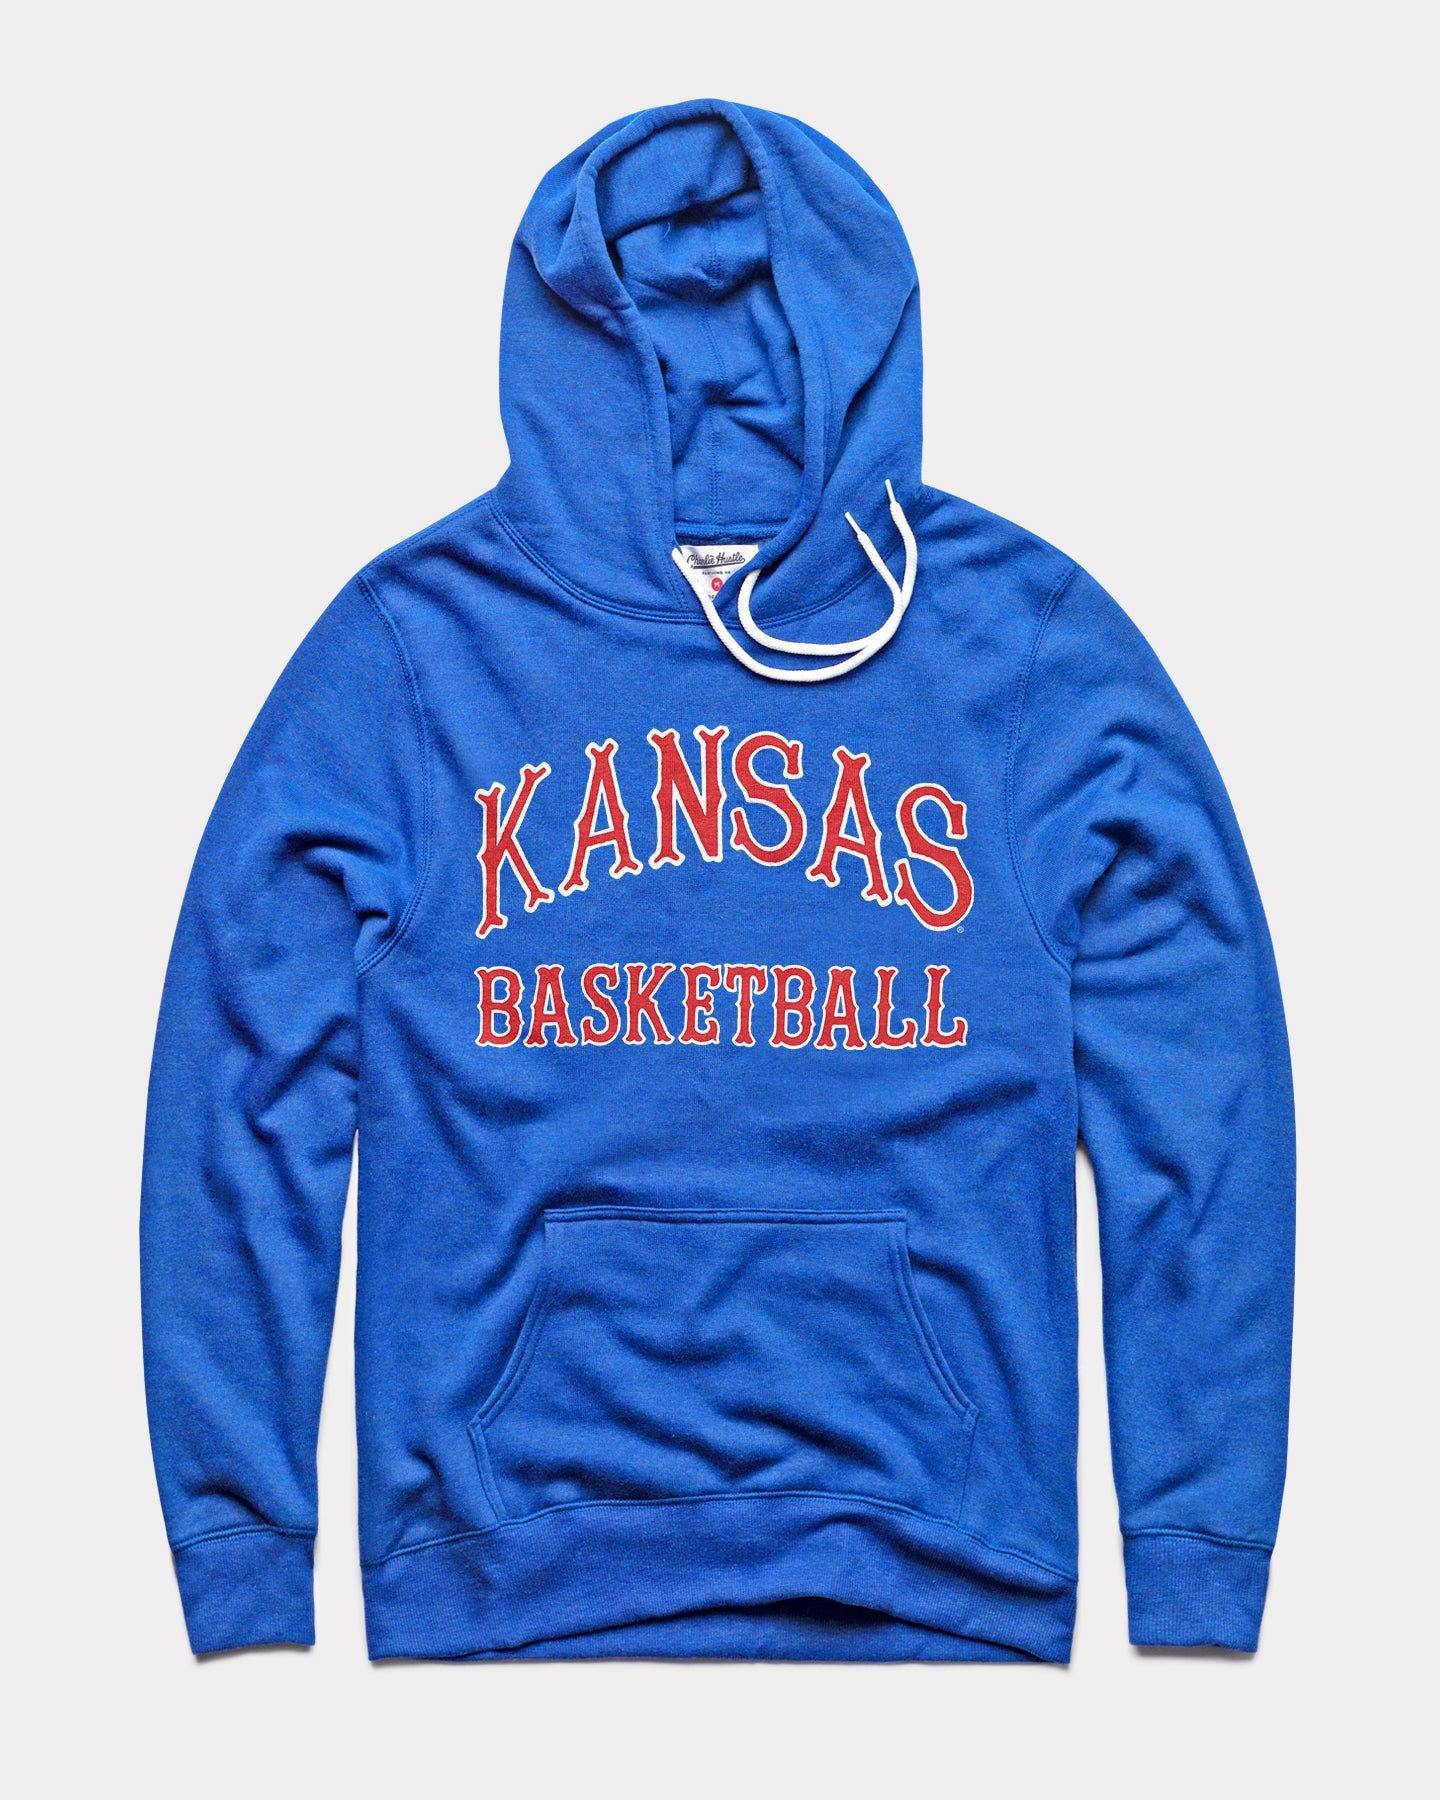 Kansas Basketball Jersey Royal Blue Vintage Hoodie